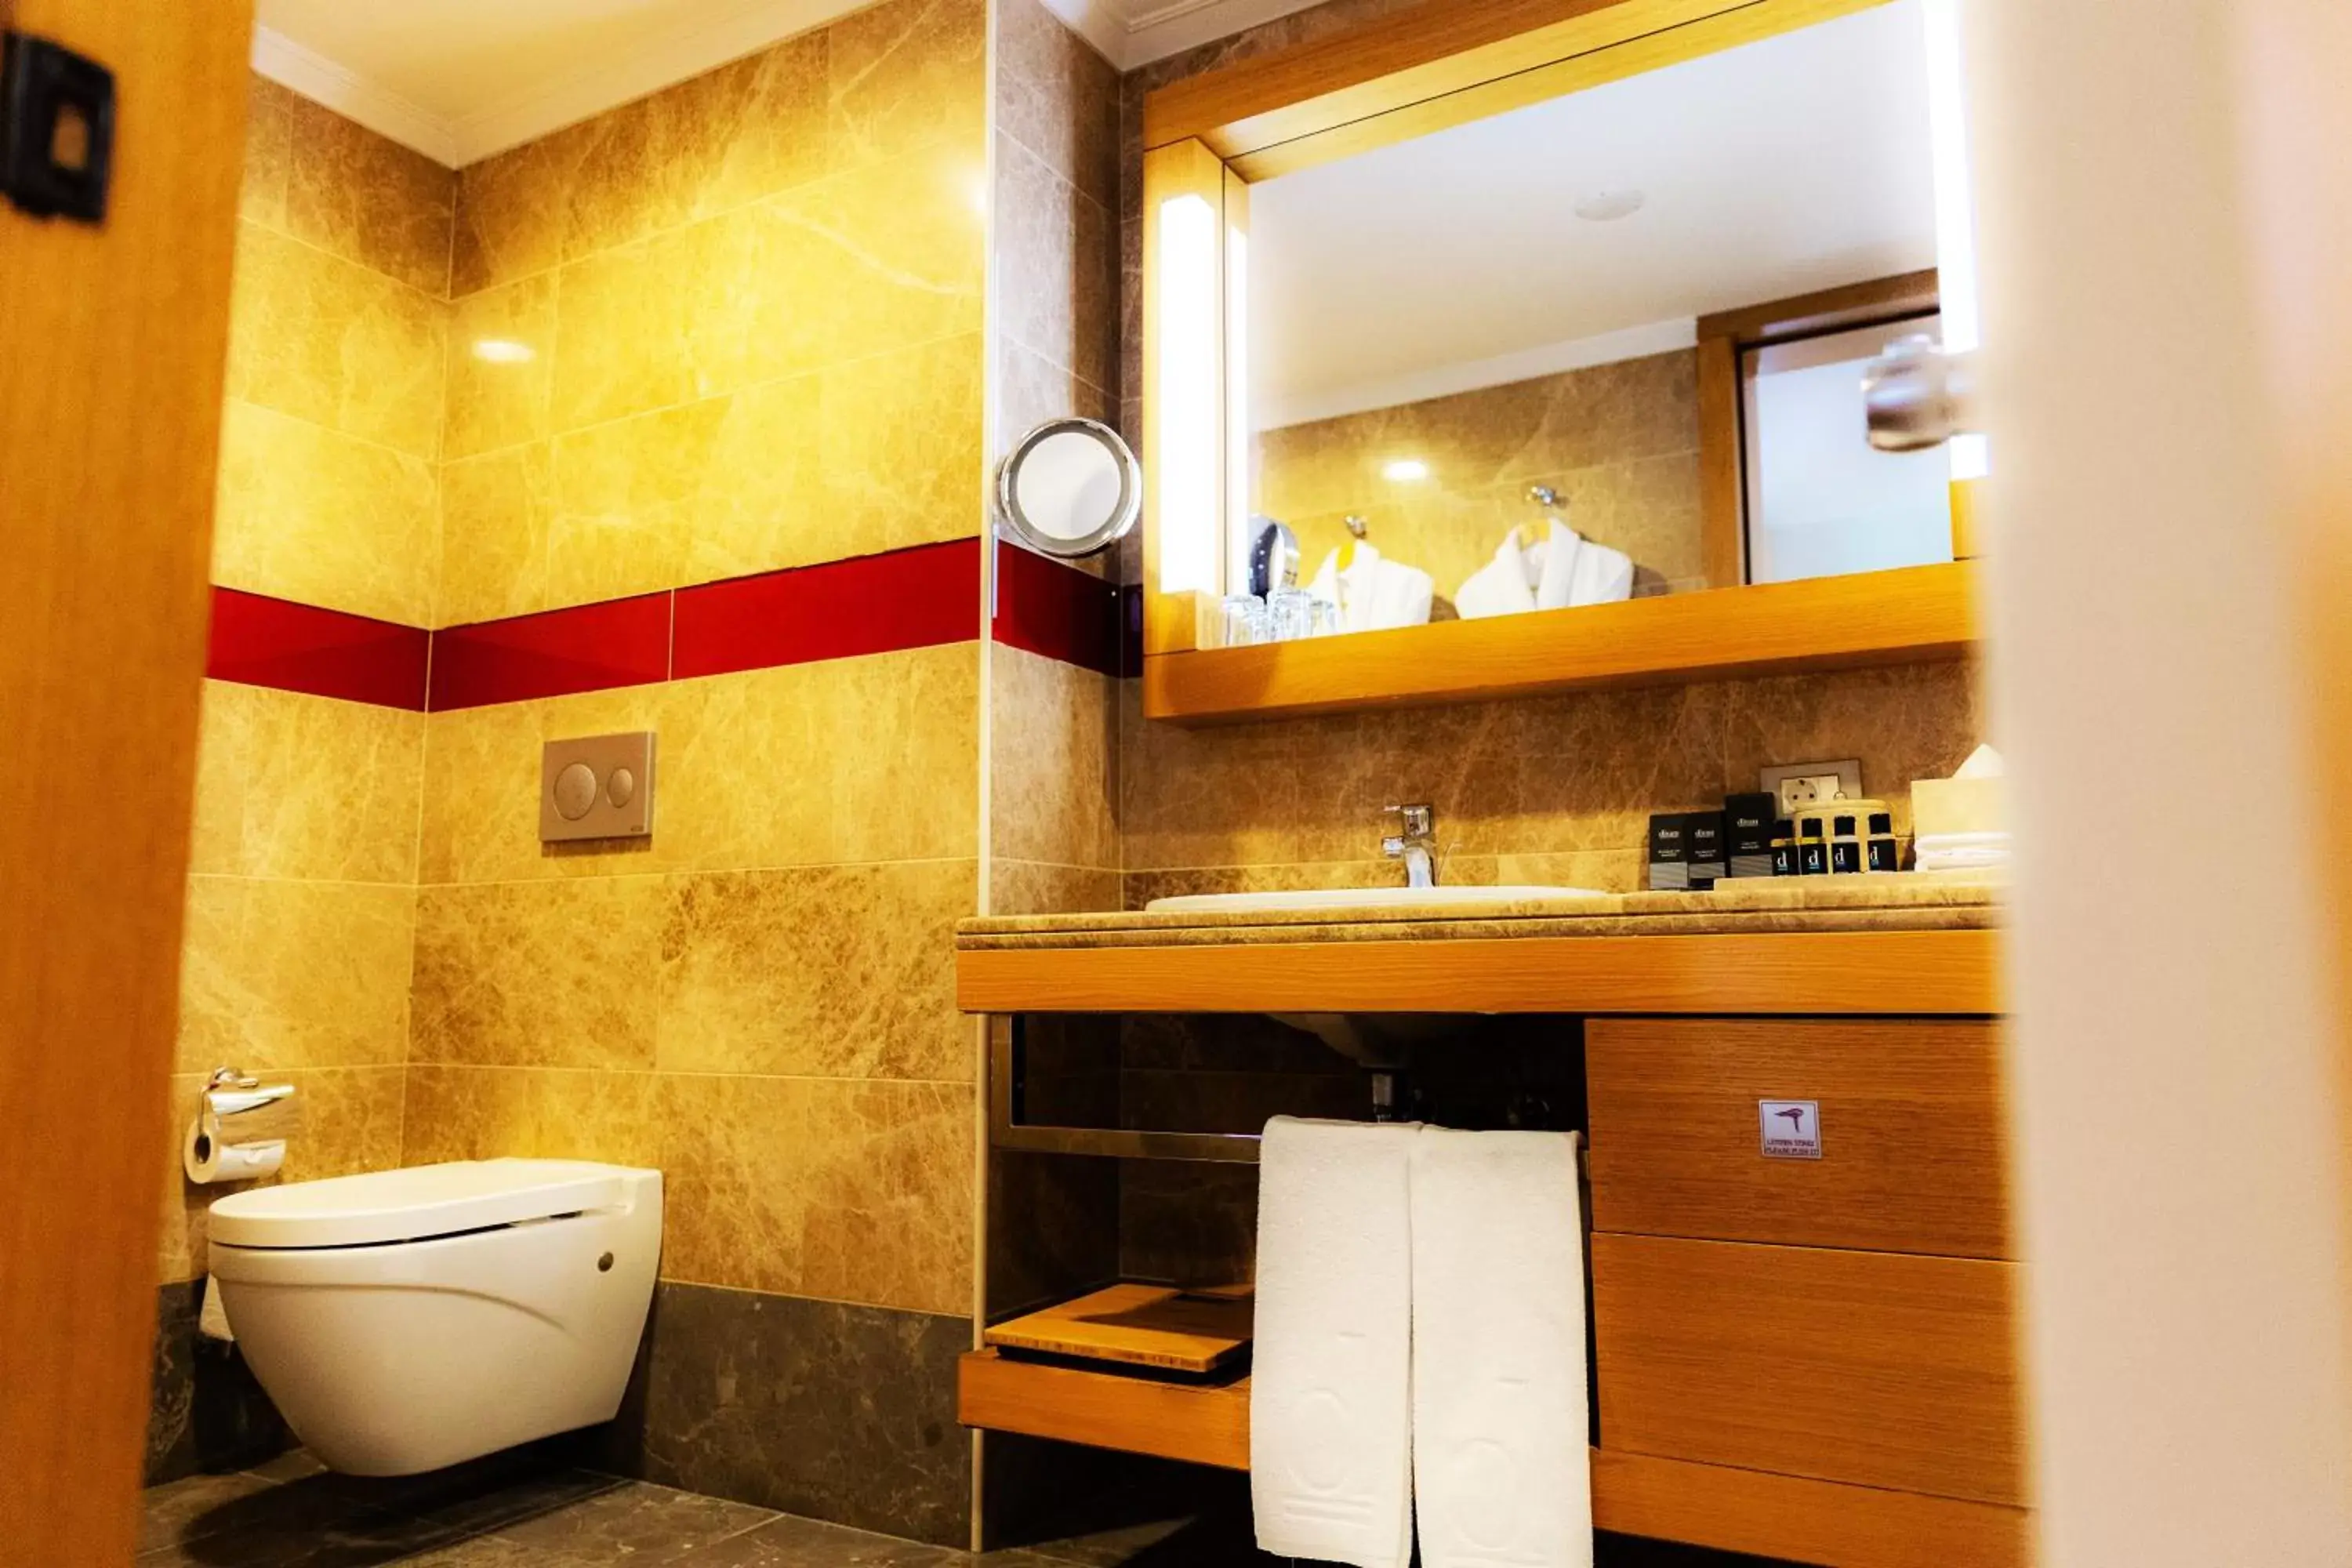 Toilet, Bathroom in Divan Bursa